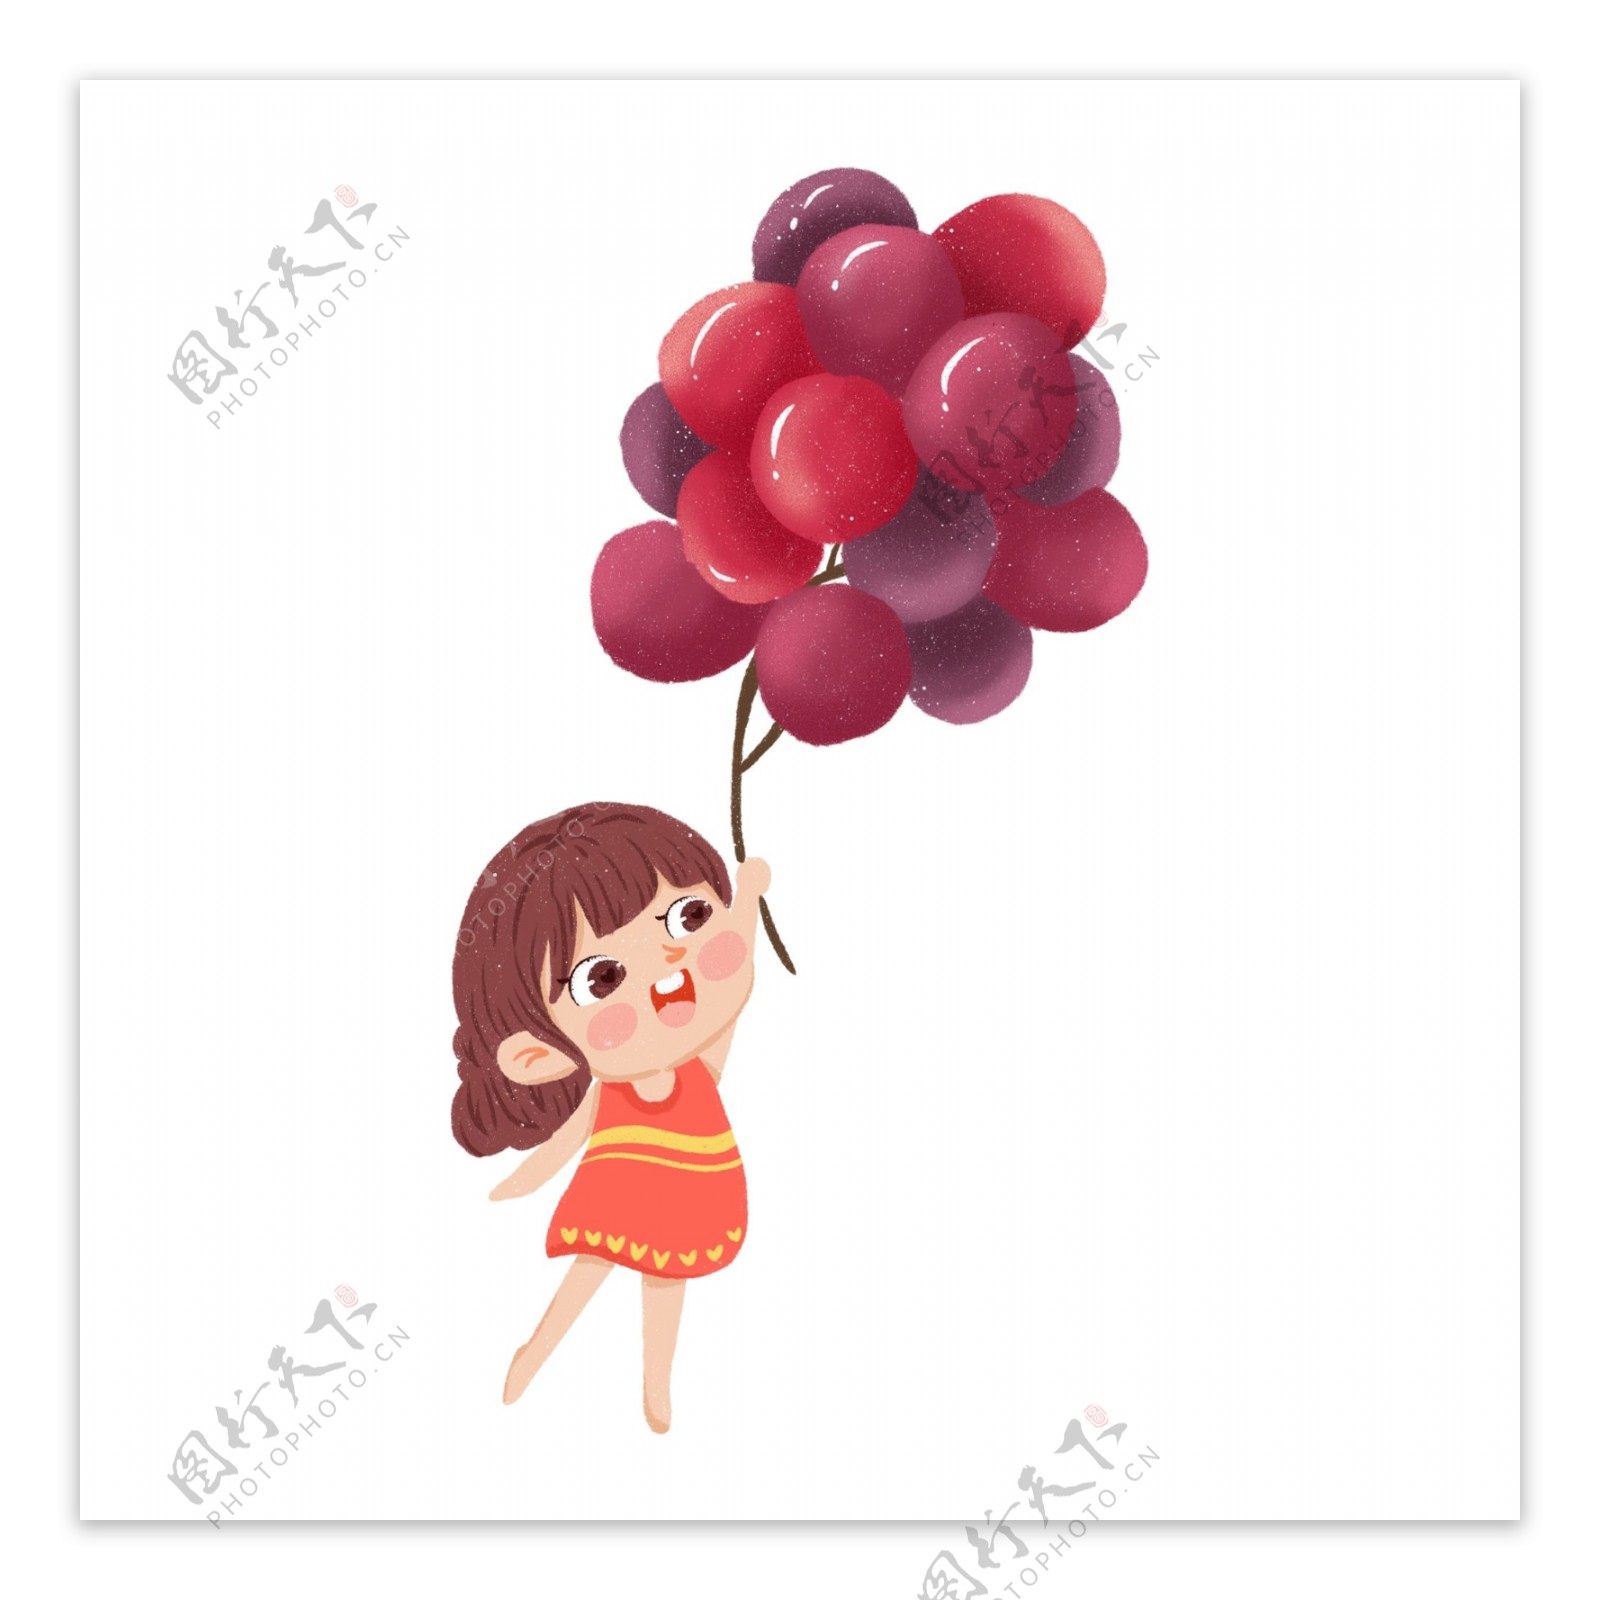 一个踮着脚拿着葡萄的小女孩